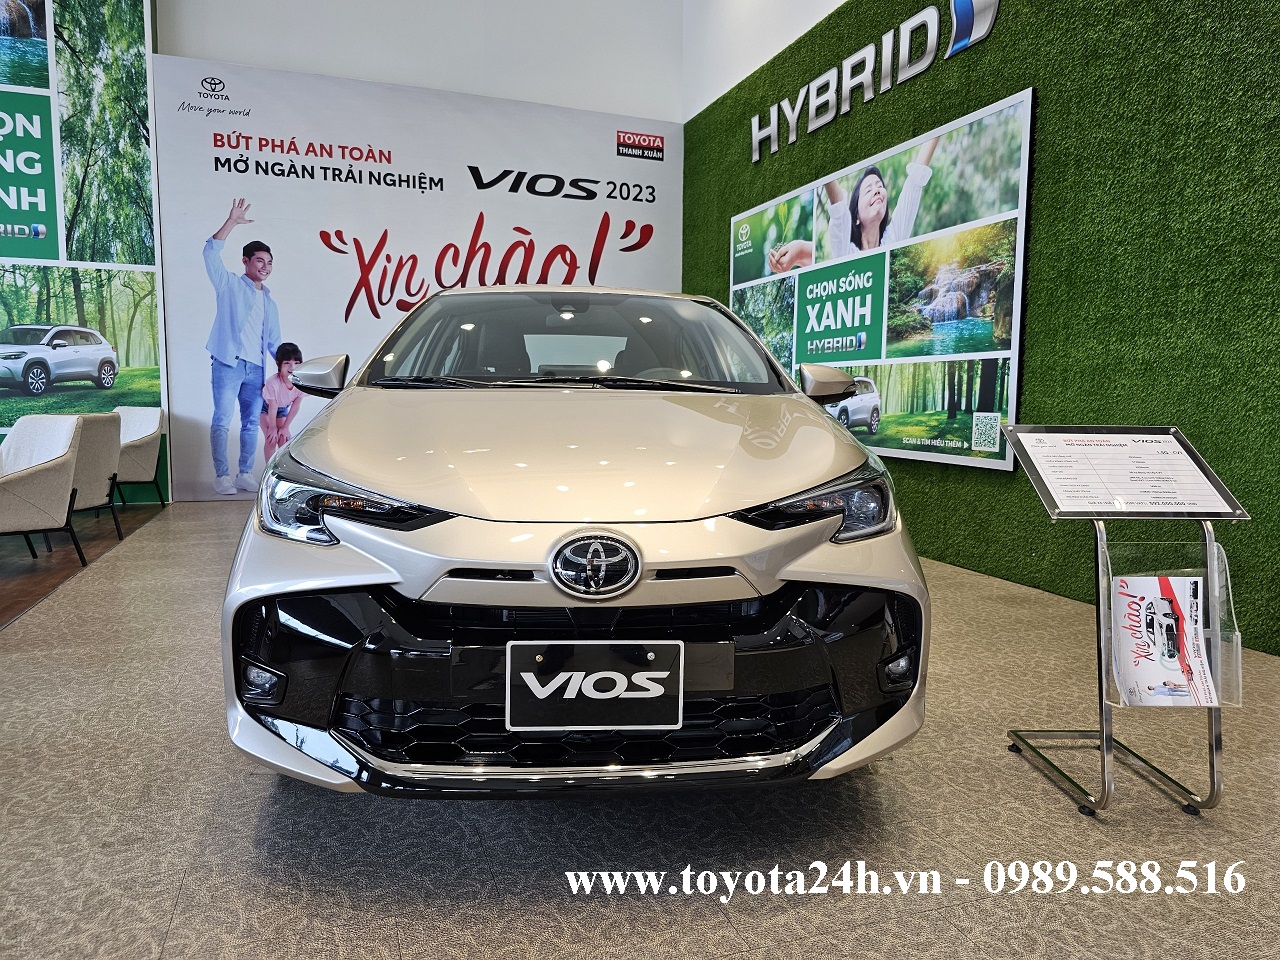 Toyota Vios 1.5G CVT 2023 Màu Nâu Vàng Cát, Hình ảnh, Thông Số Kỹ Thuật, Giá lăn bánh